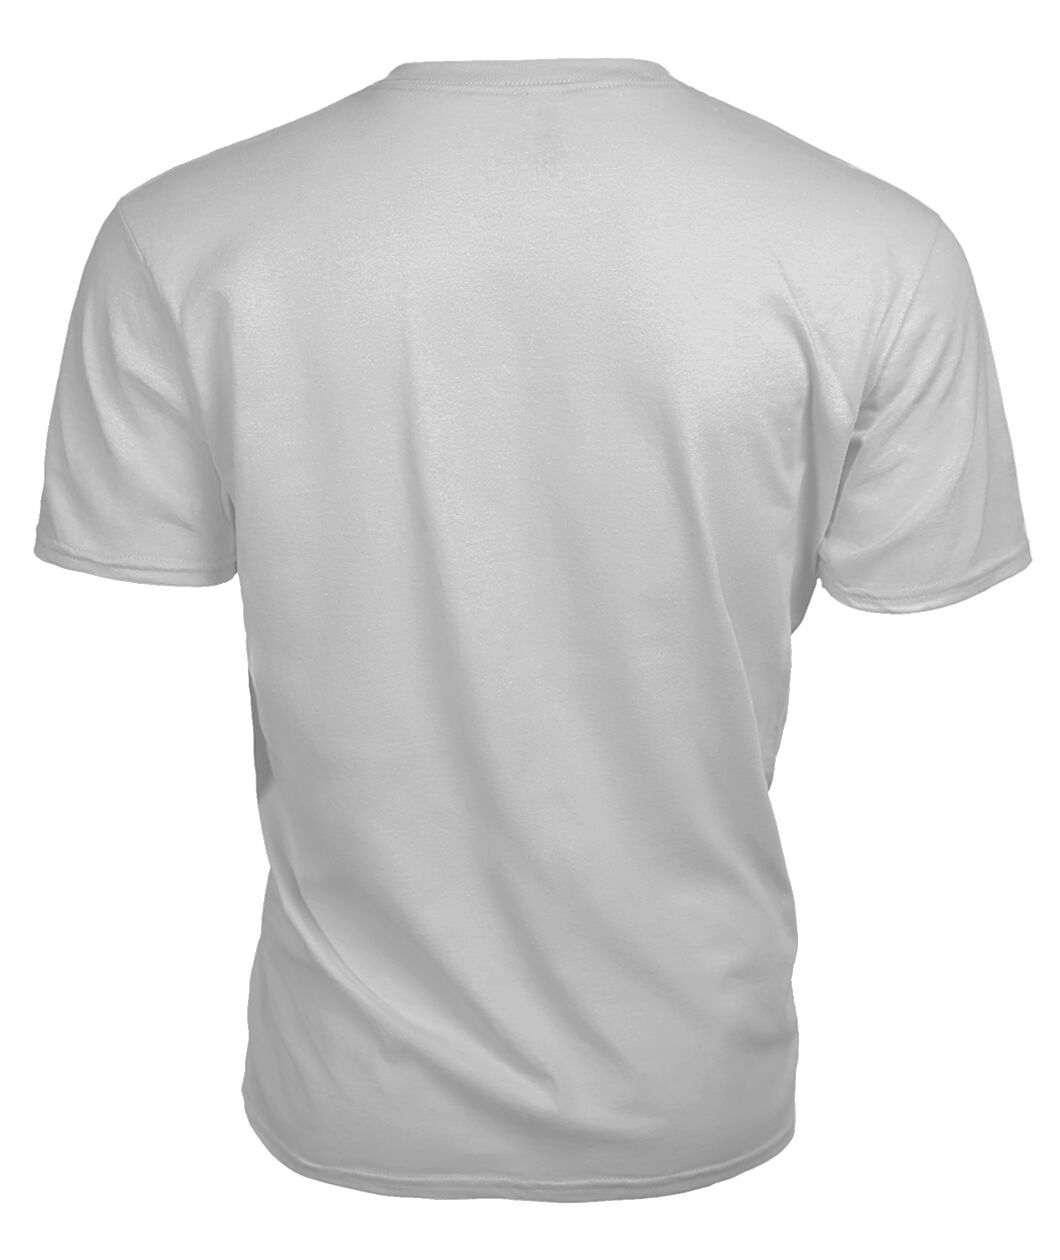 Auchinleck Family Tartan - 2D T-shirt